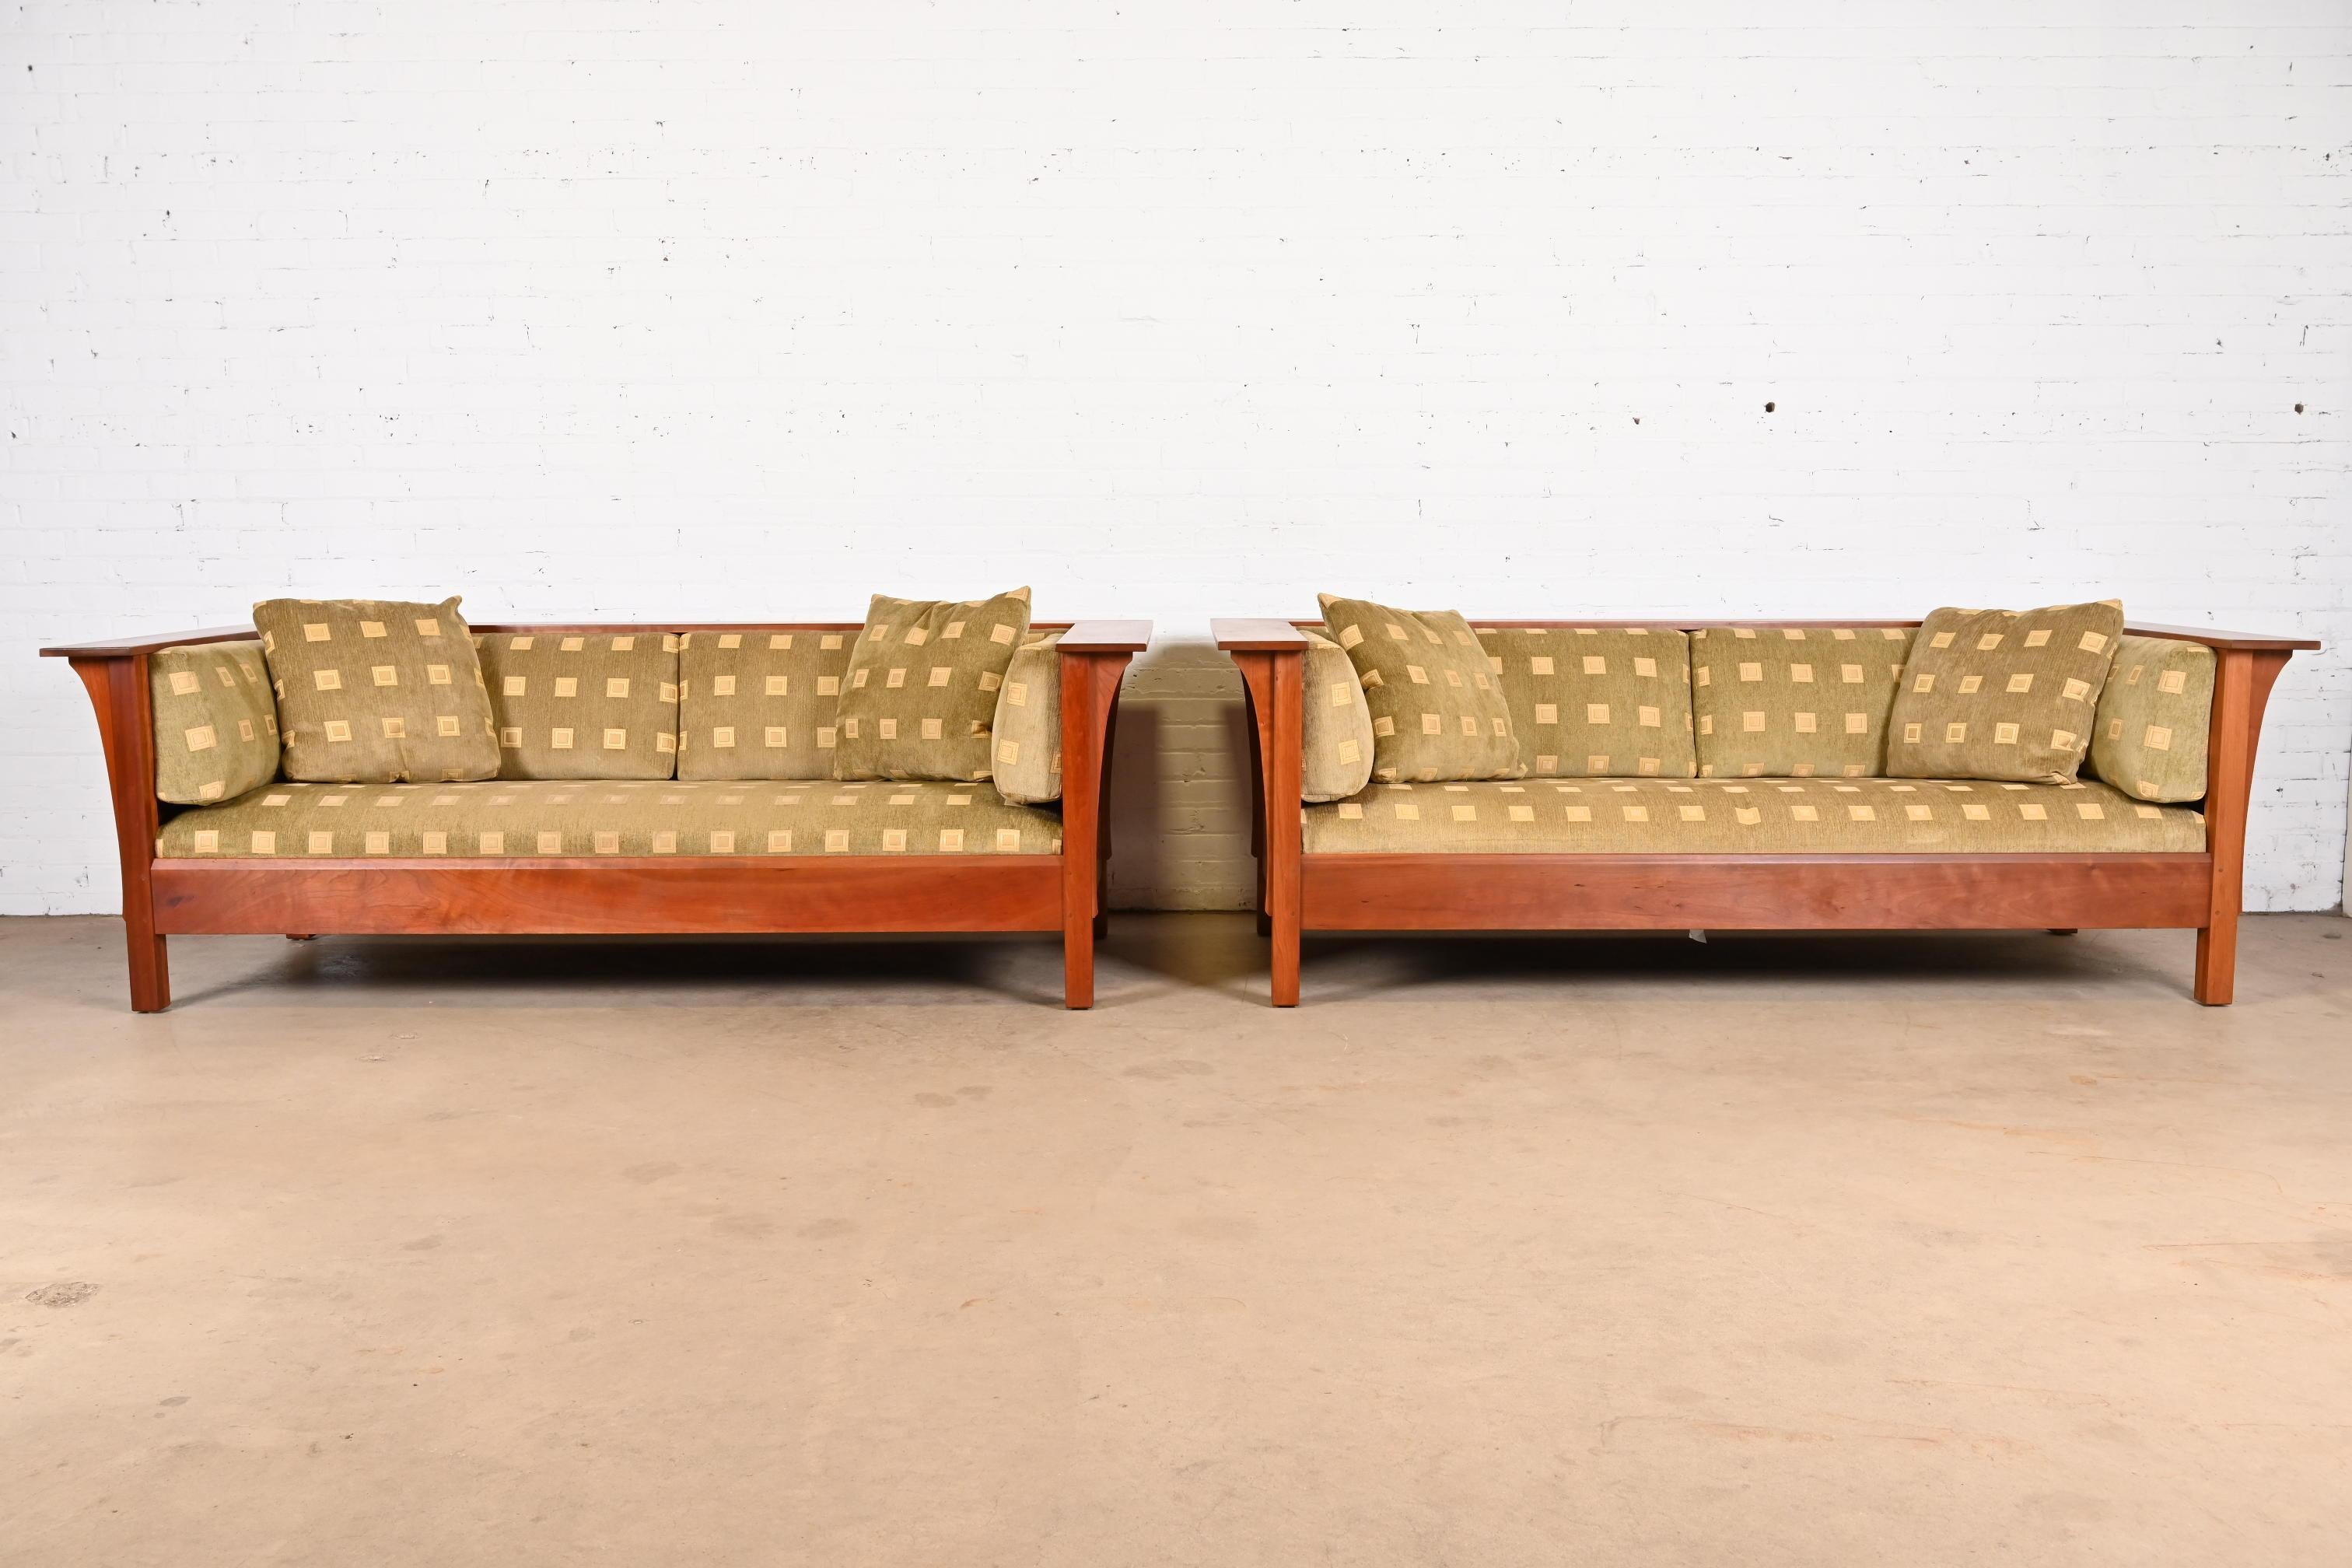 Ein wunderschönes Paar Sofas im Missions- oder Arts & Crafts-Stil aus der Prärie

Von L. & J.G Stickley

USA, 21. Jahrhundert

Massive Kirschholzrahmen, mit Originalpolsterung.

Jedes Maß: 84,5 